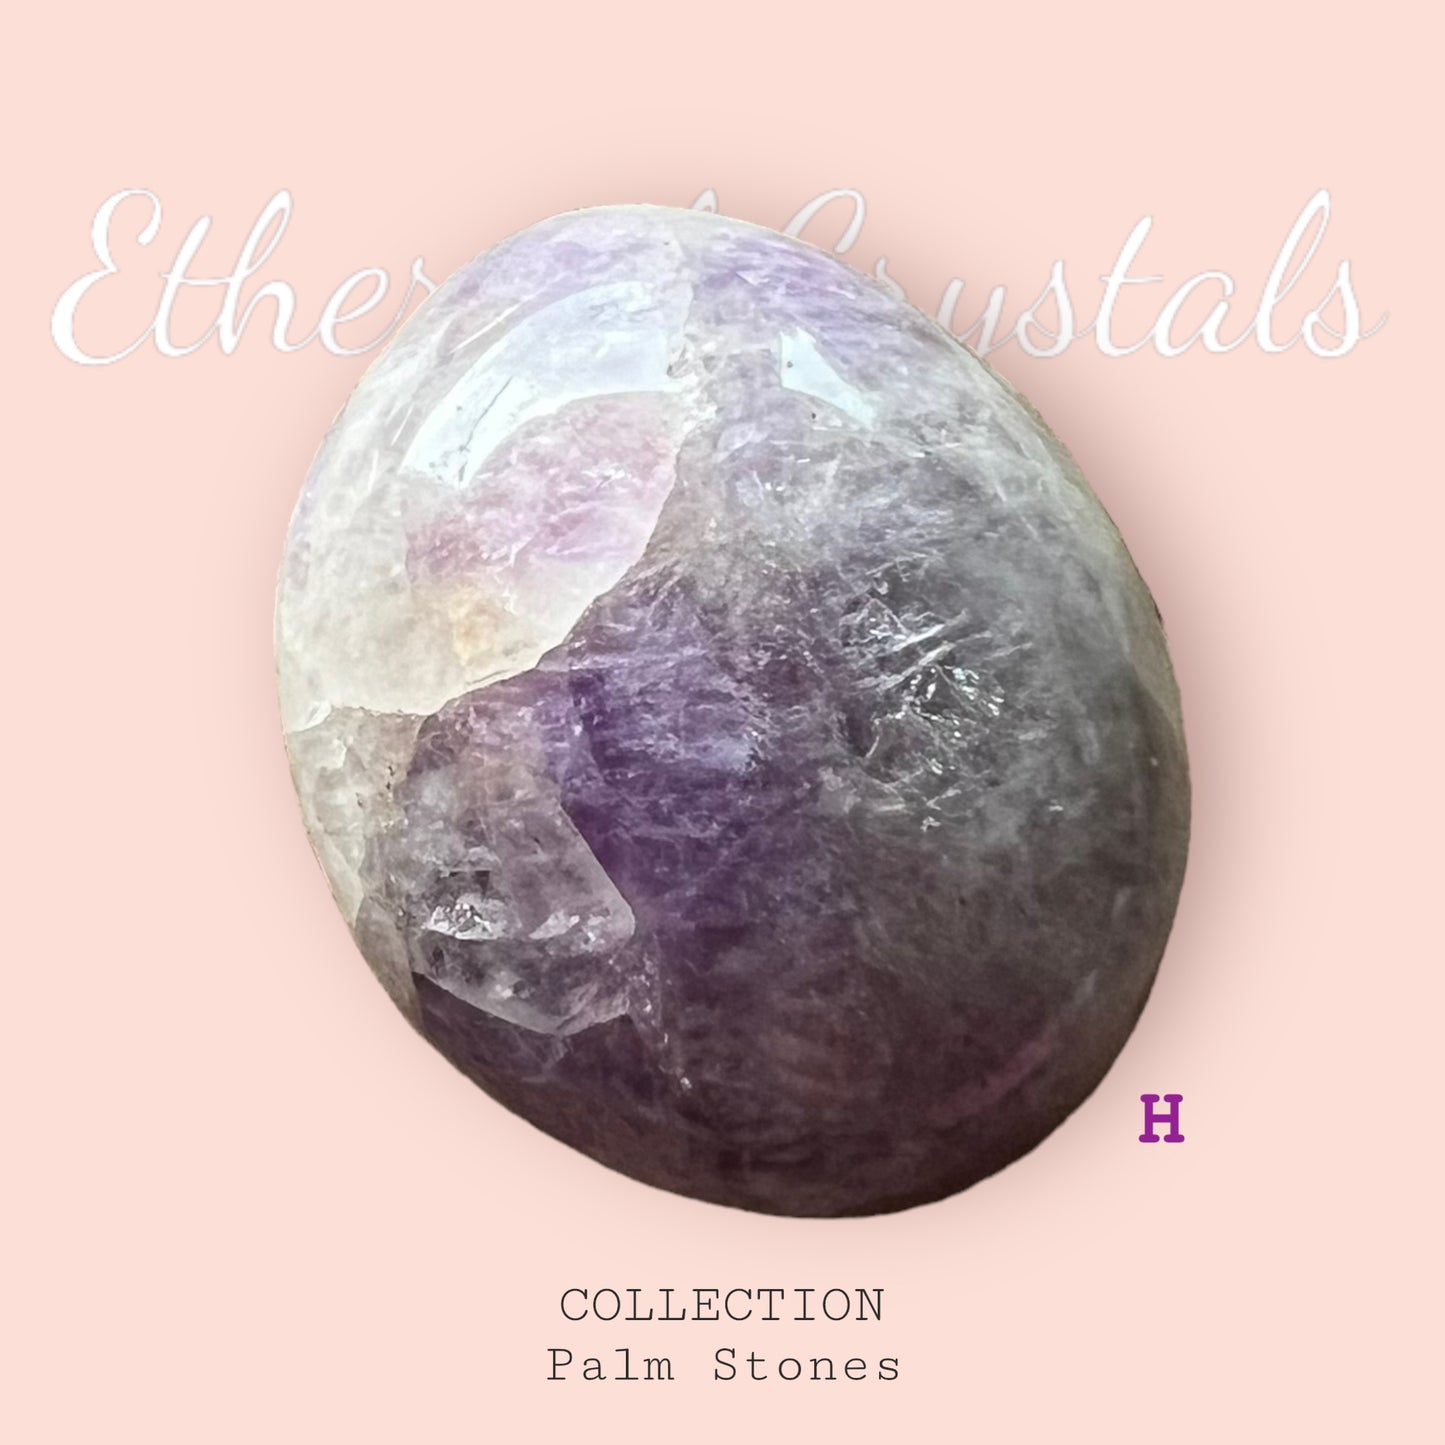 紫水晶棕櫚石 (S) 第 1 批